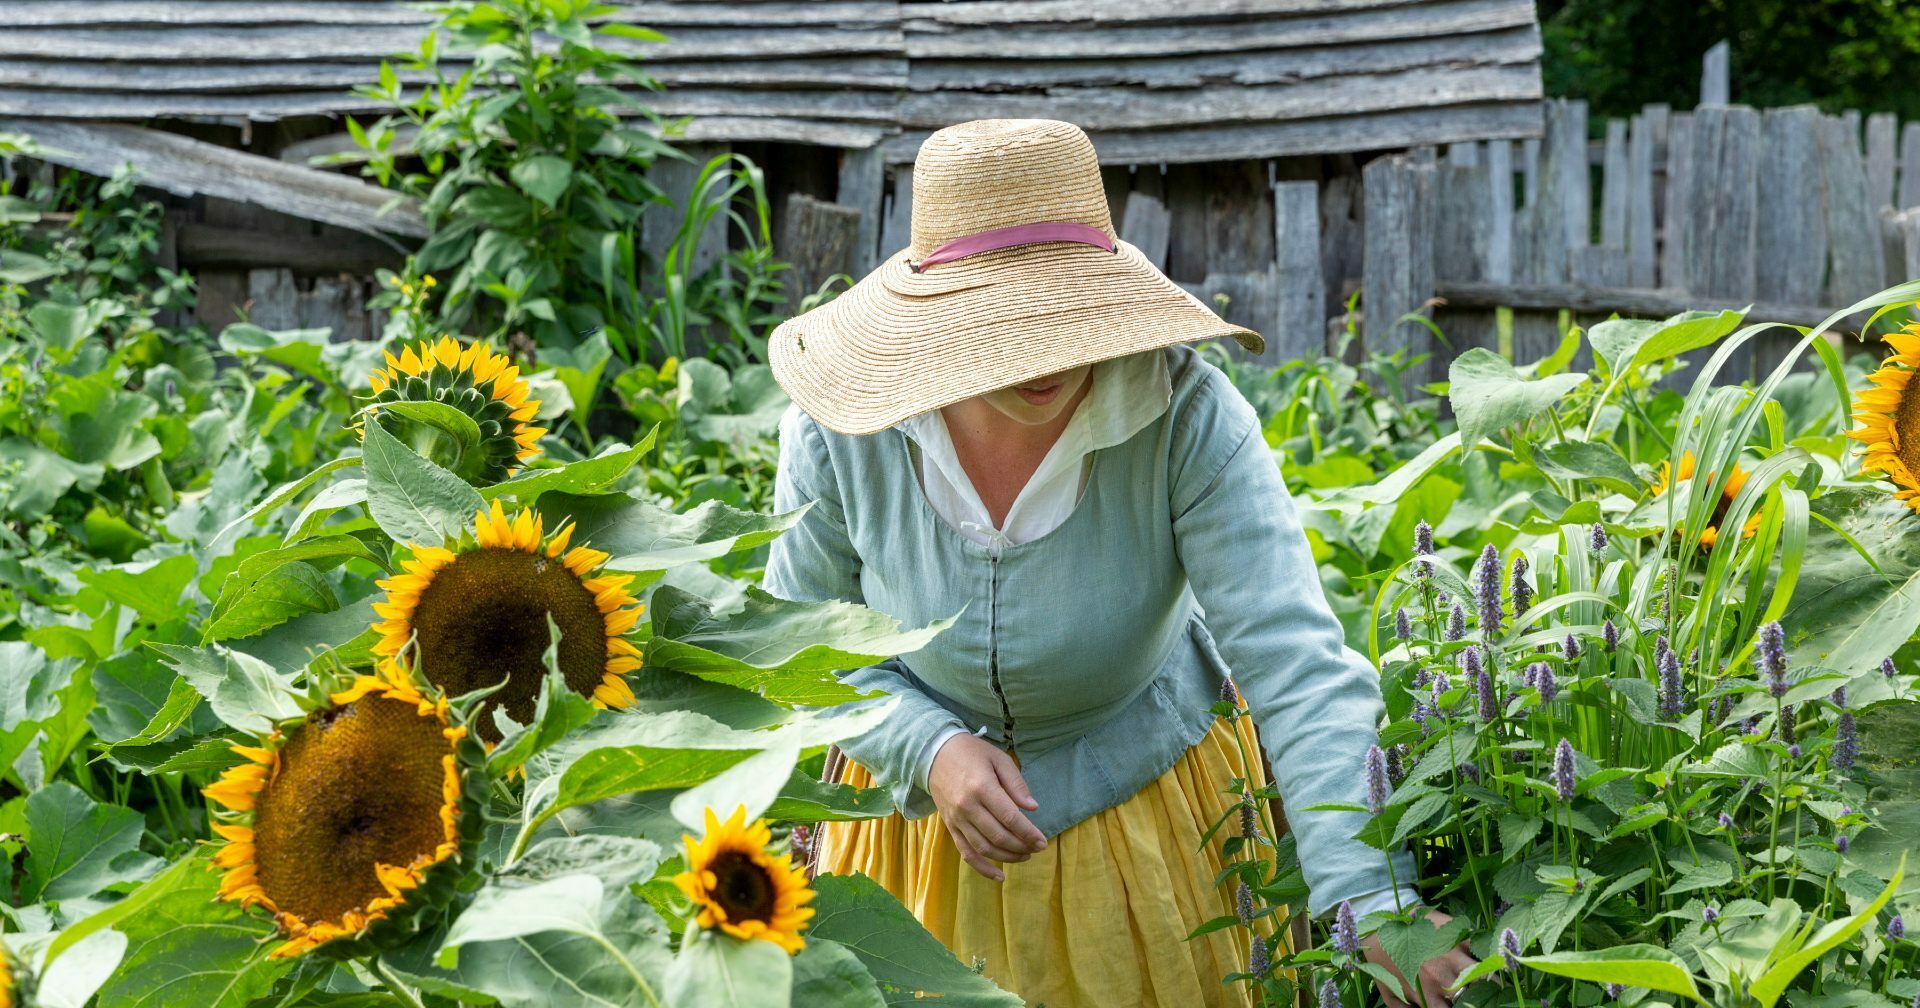 Pilgrim in garden with sunflower